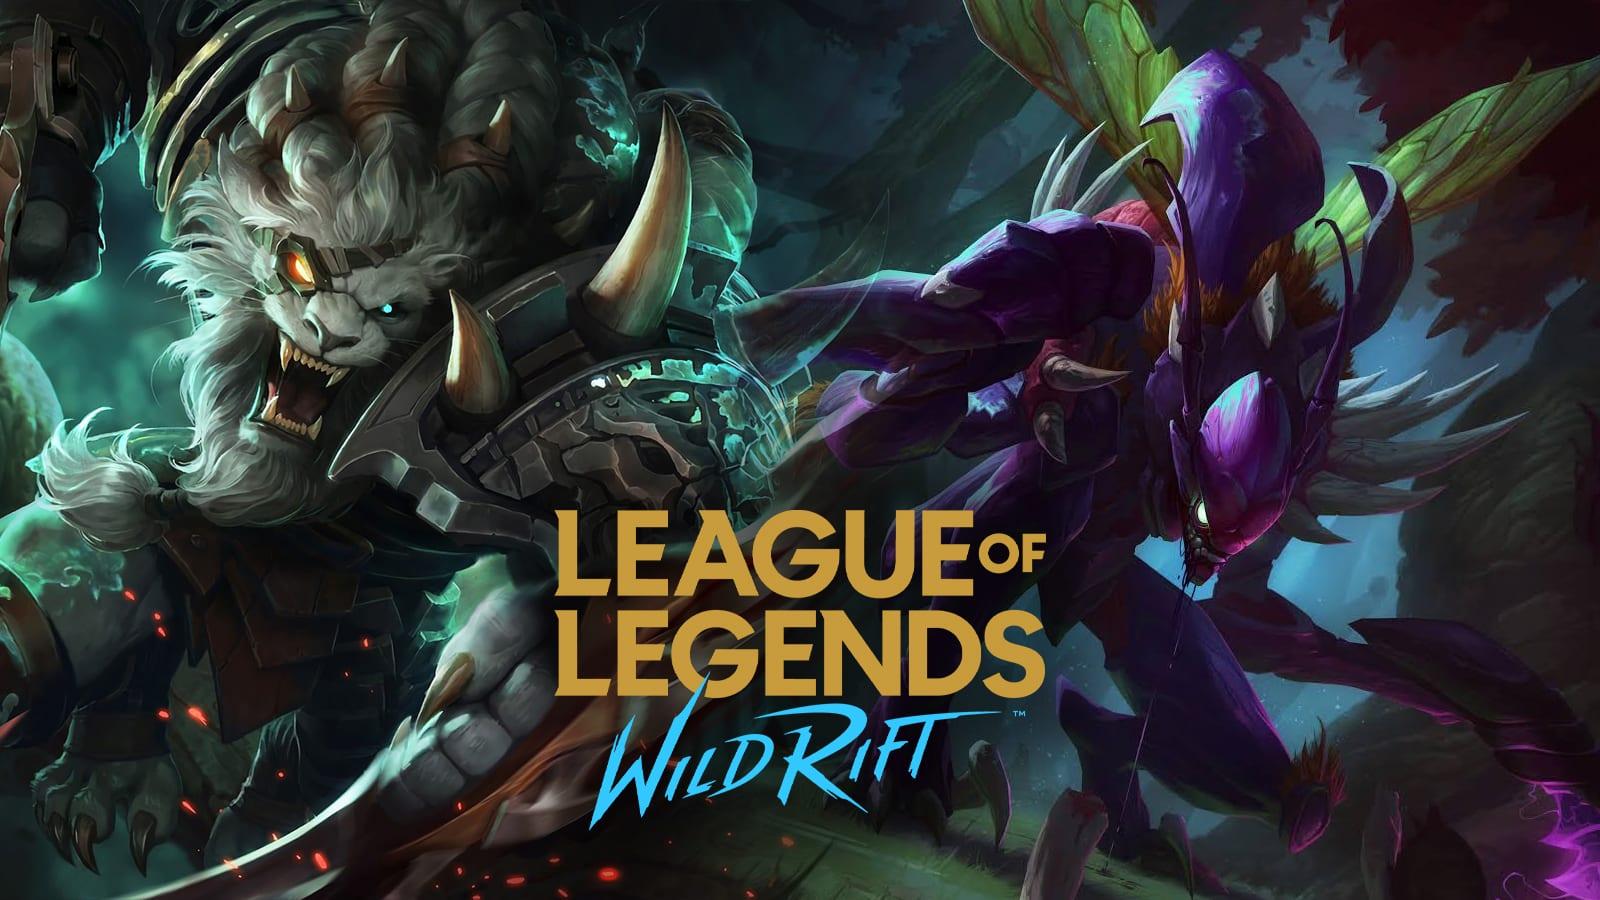 Video Game League of Legends: Wild Rift 4k Ultra HD Wallpaper